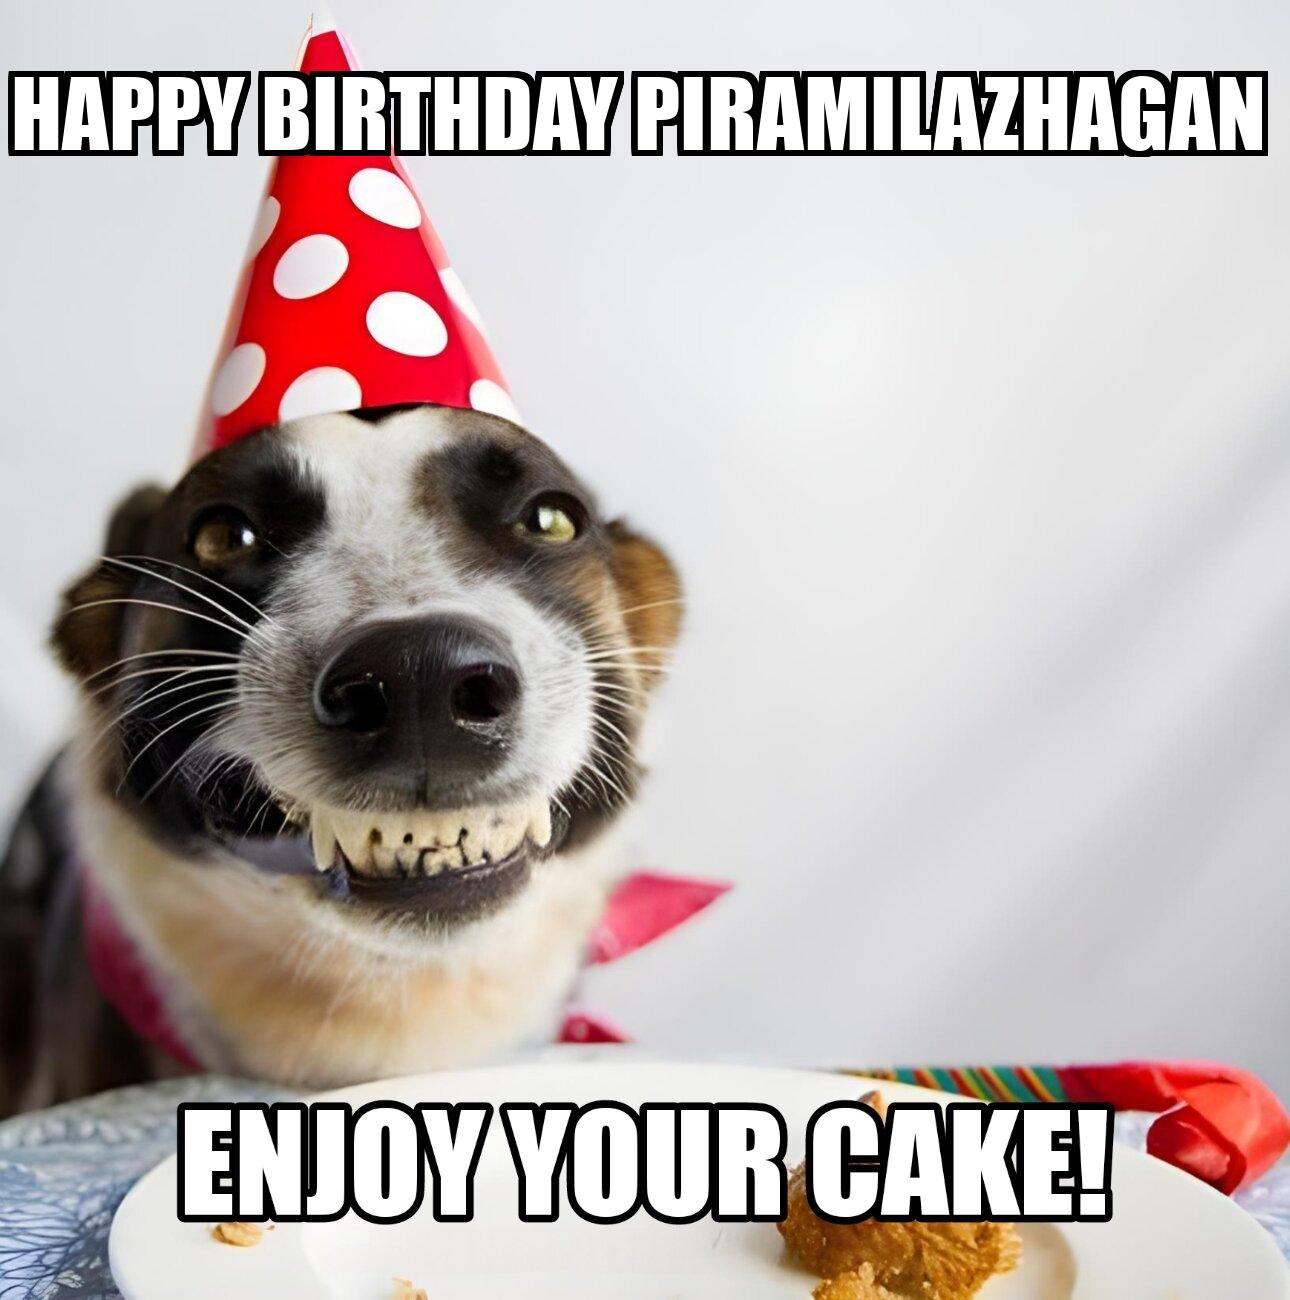 Happy Birthday Piramilazhagan Enjoy Your Cake Dog Meme